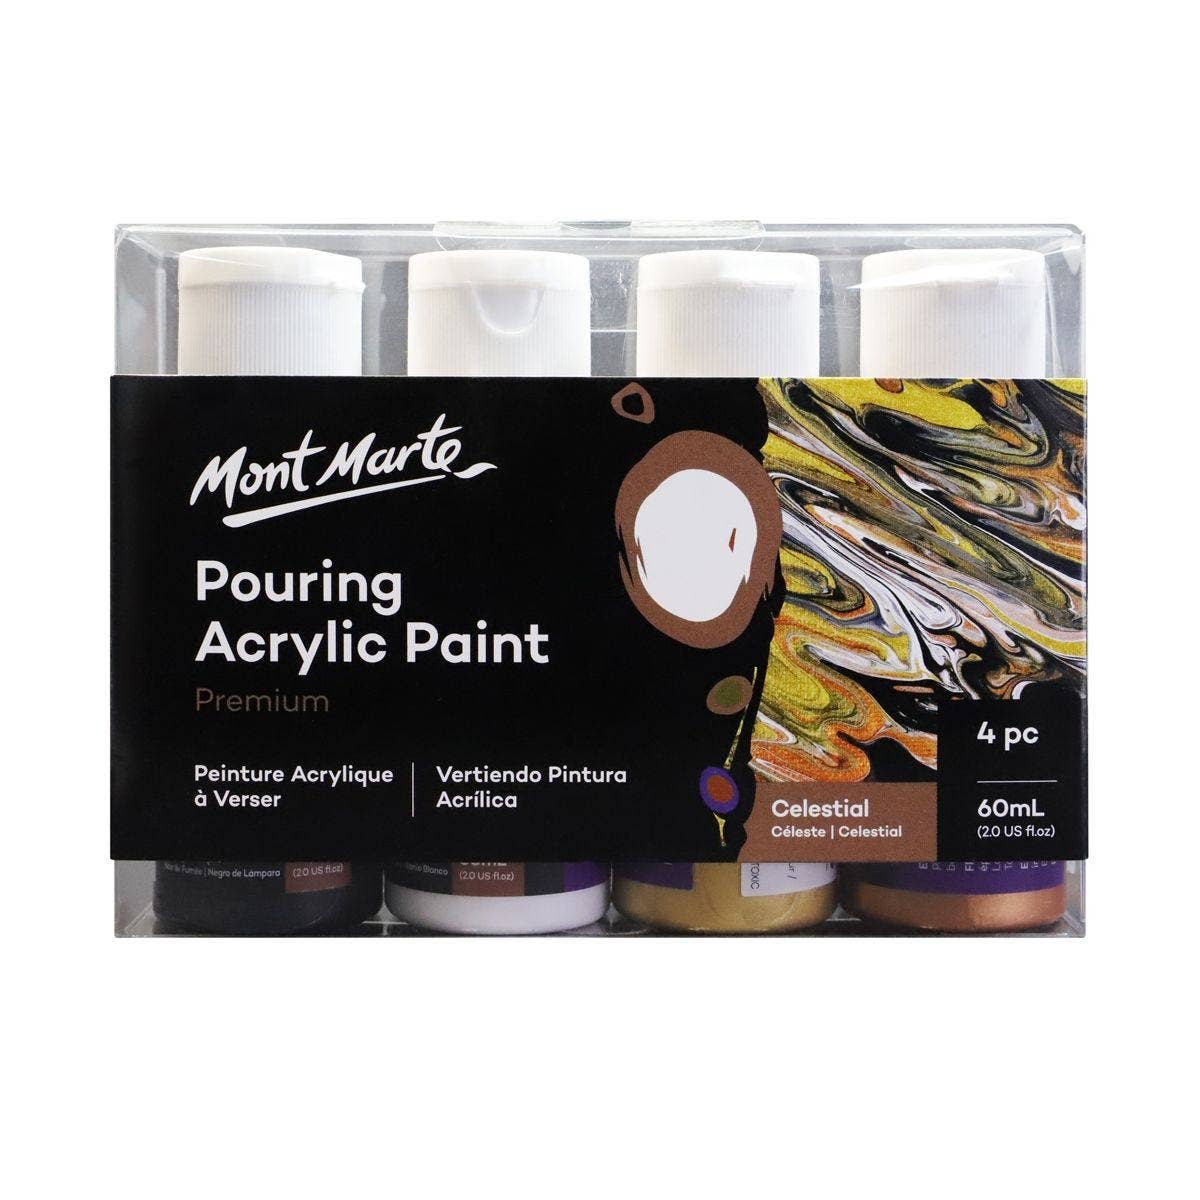 Pouring Acrylic Paint Set Premium 4pc x 2oz - Celestial